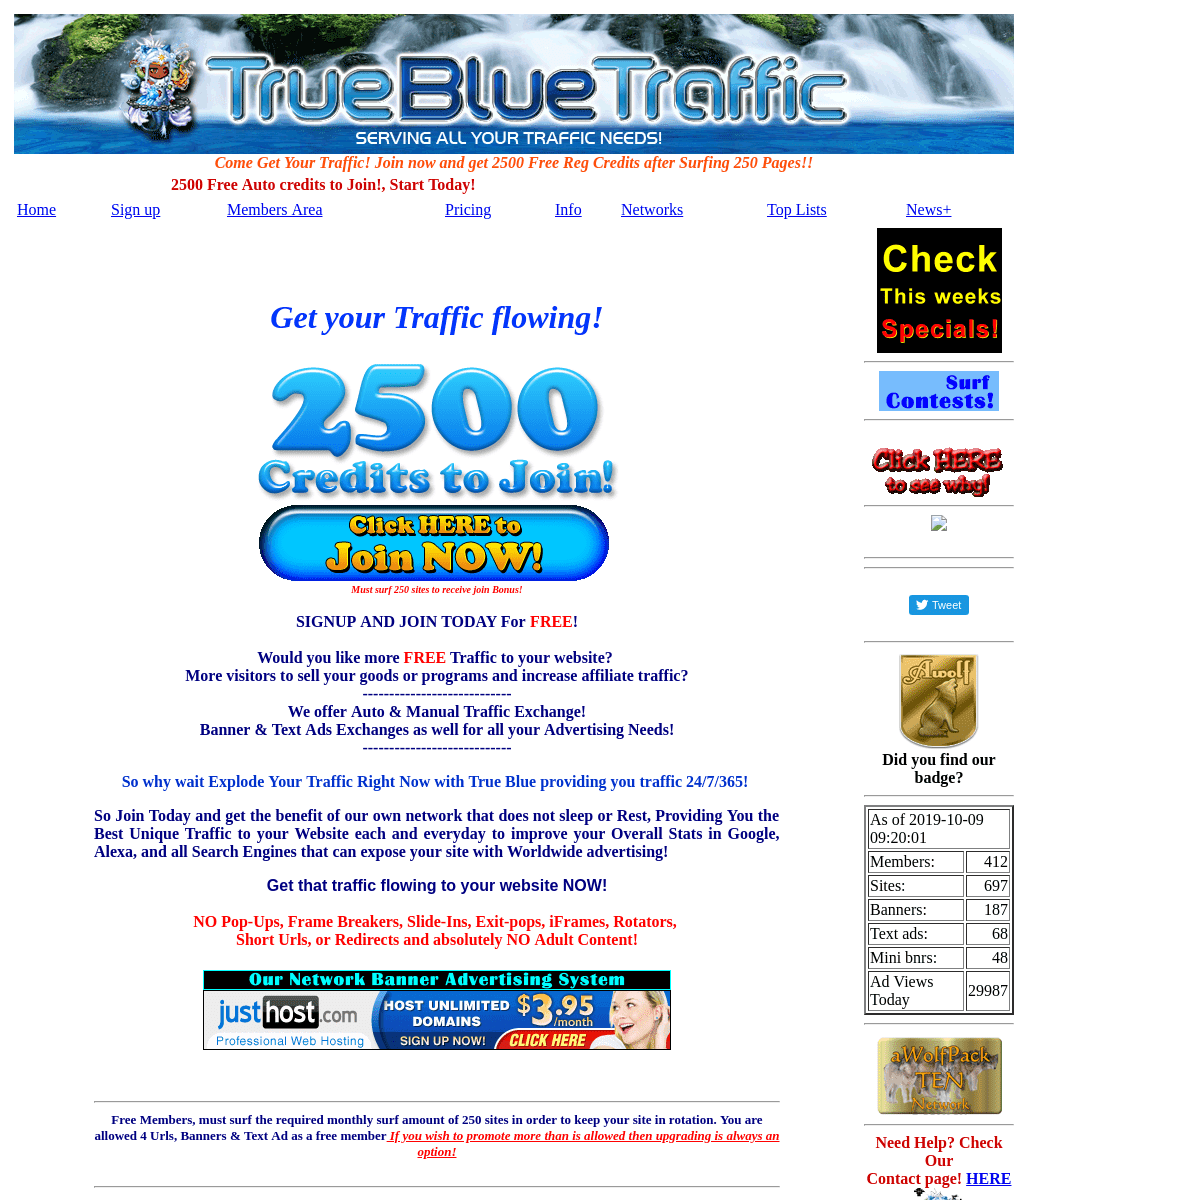 A complete backup of true-bluetraffic.net